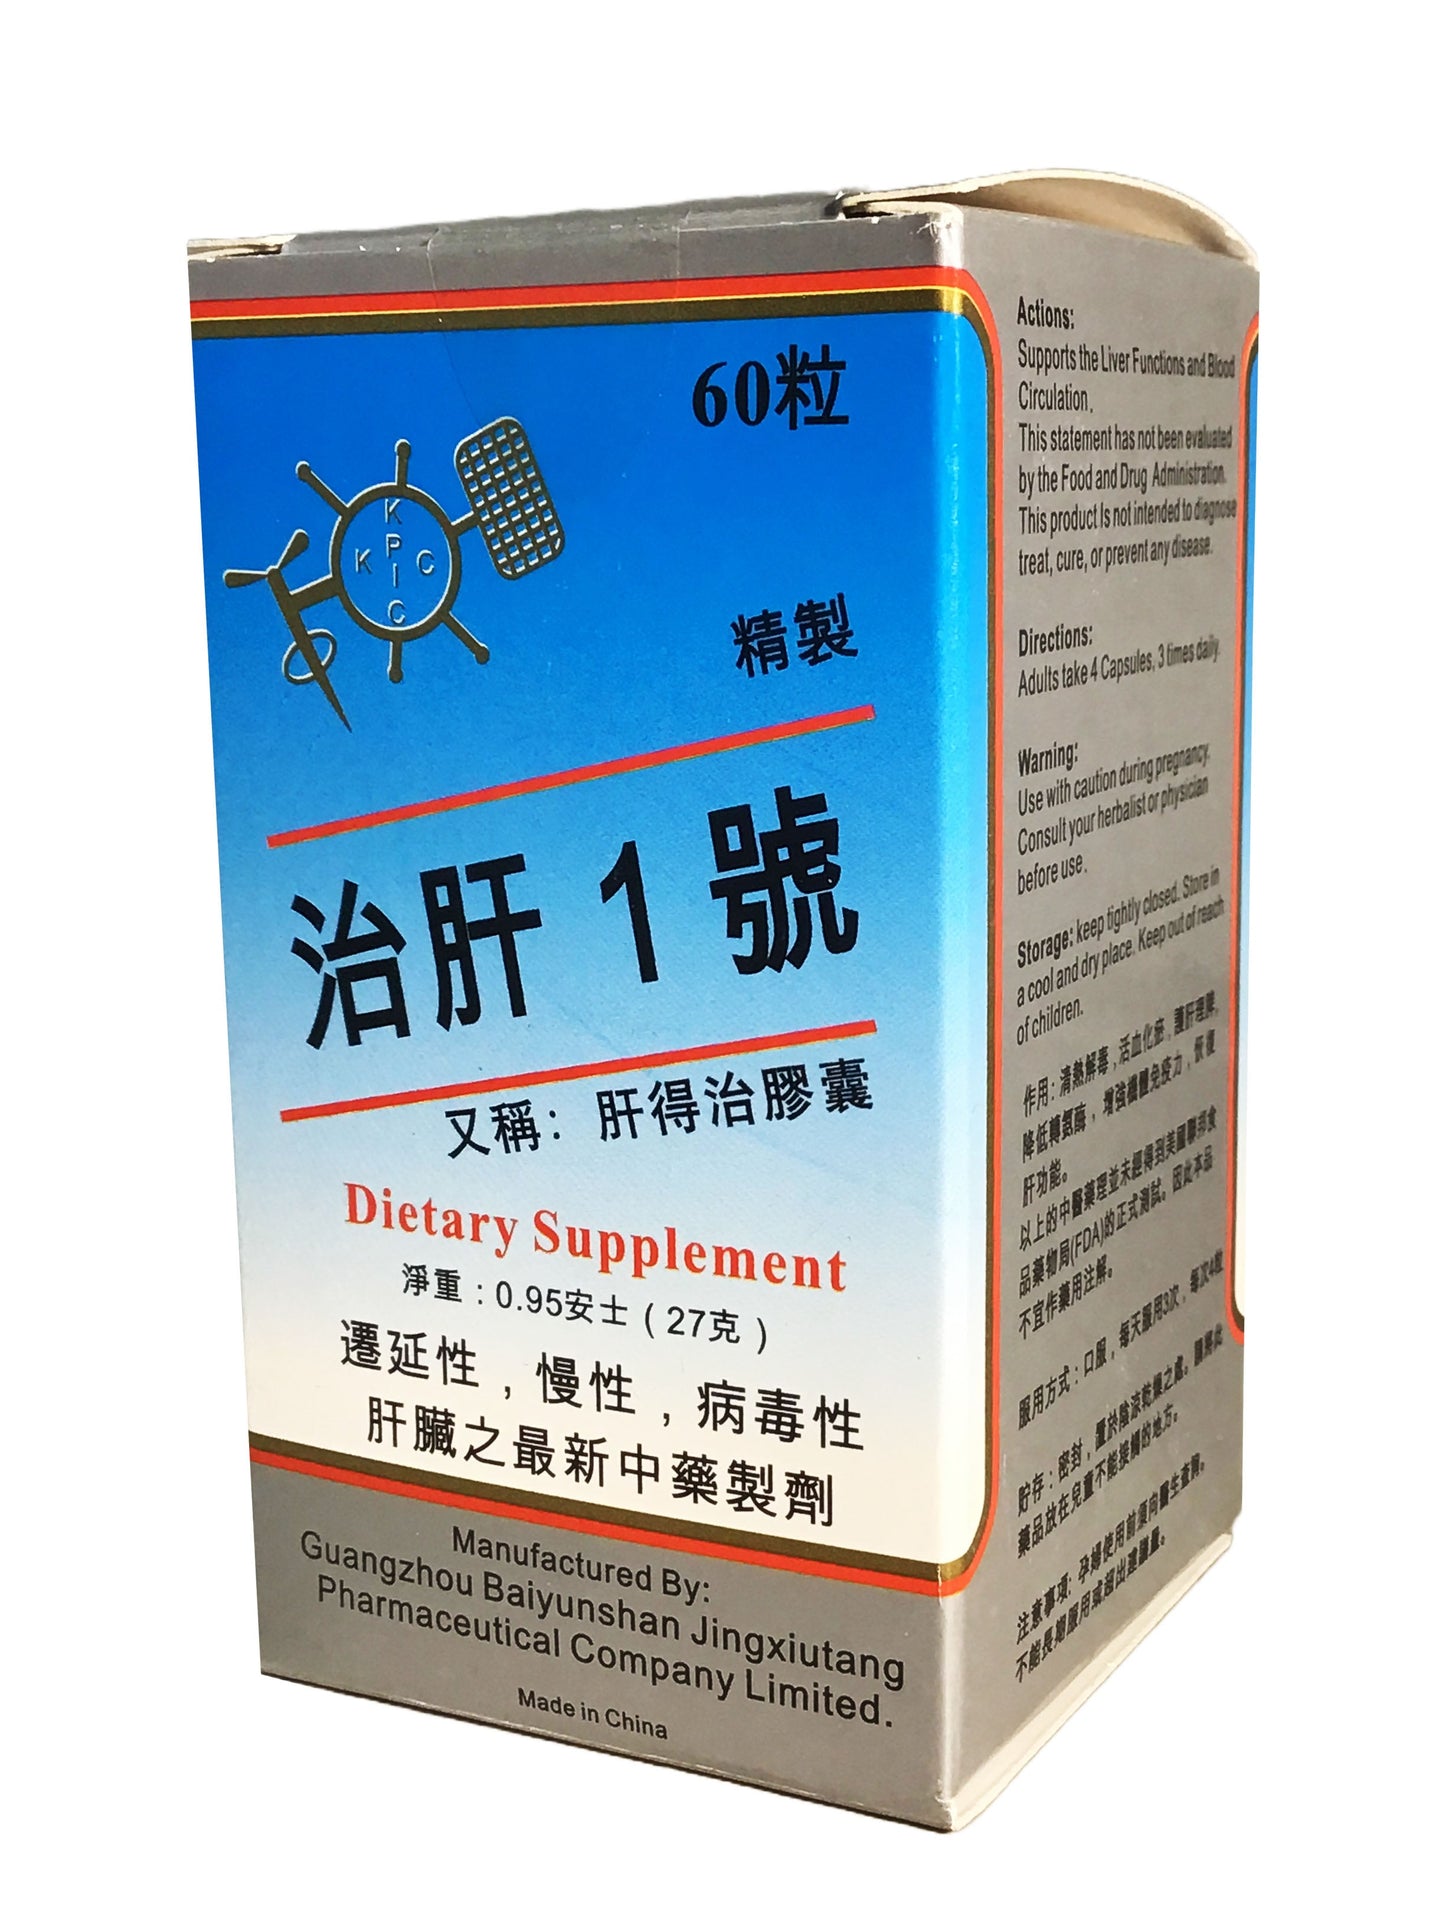 Liver Support No.1 (Gandezhi Capsule) 治肝1號(肝得治膠囊) 60 Capsules